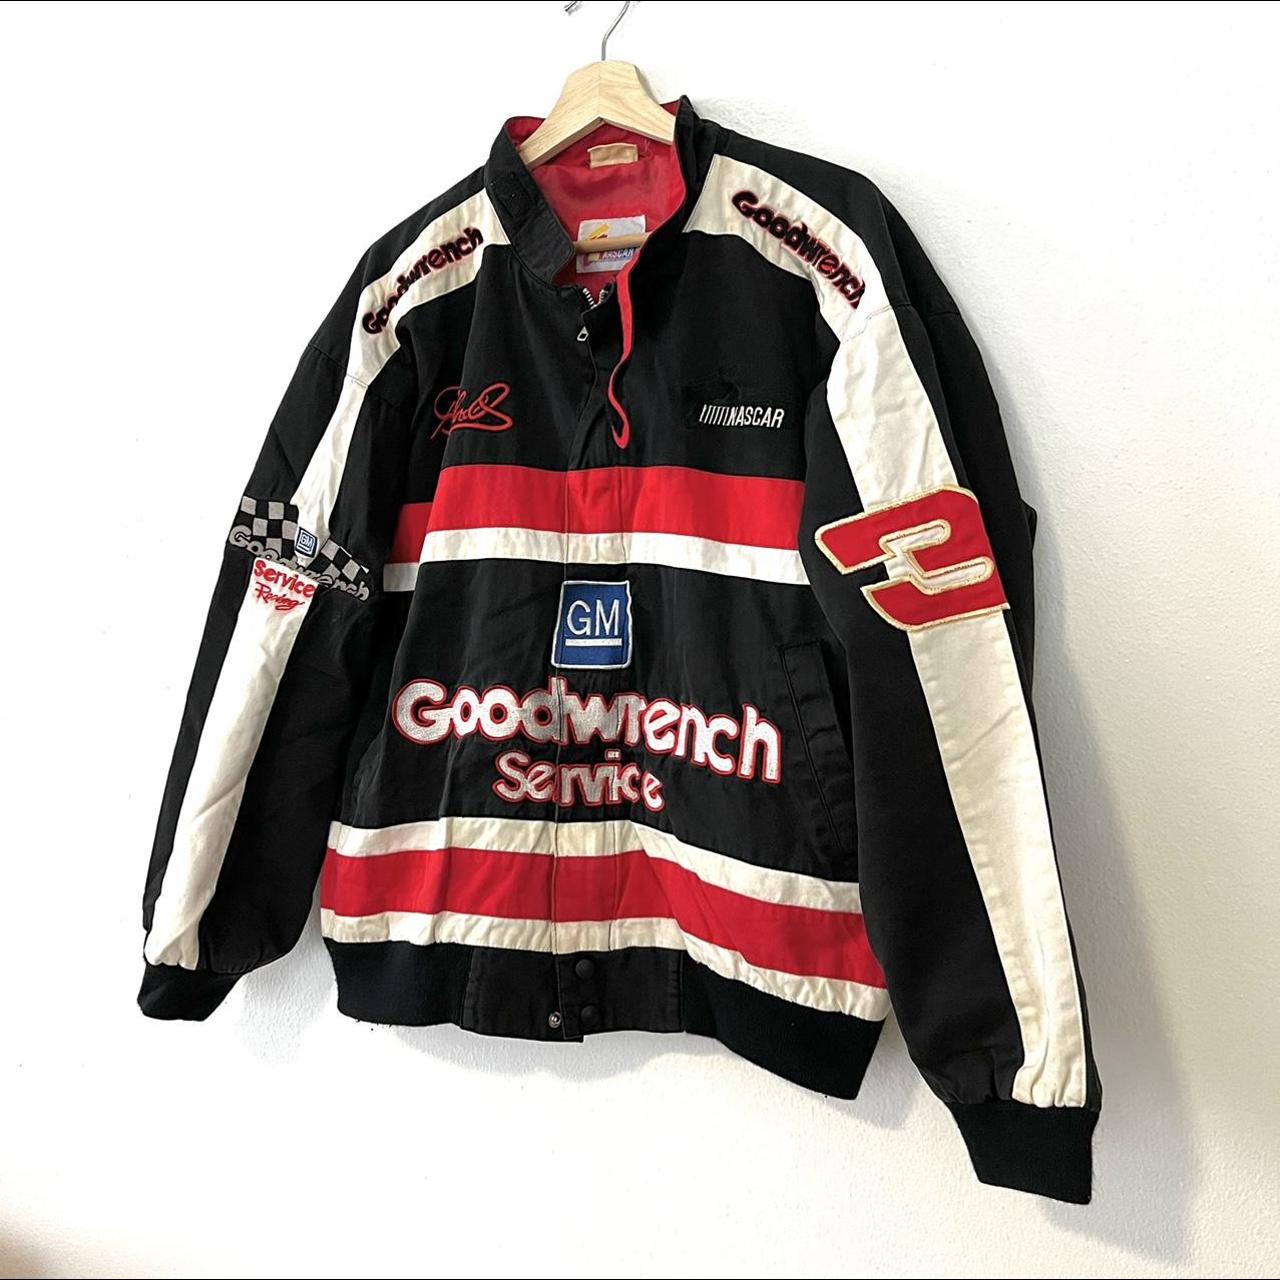 Vintage 90s goodwrench dale earnhardt nascar racing... - Depop